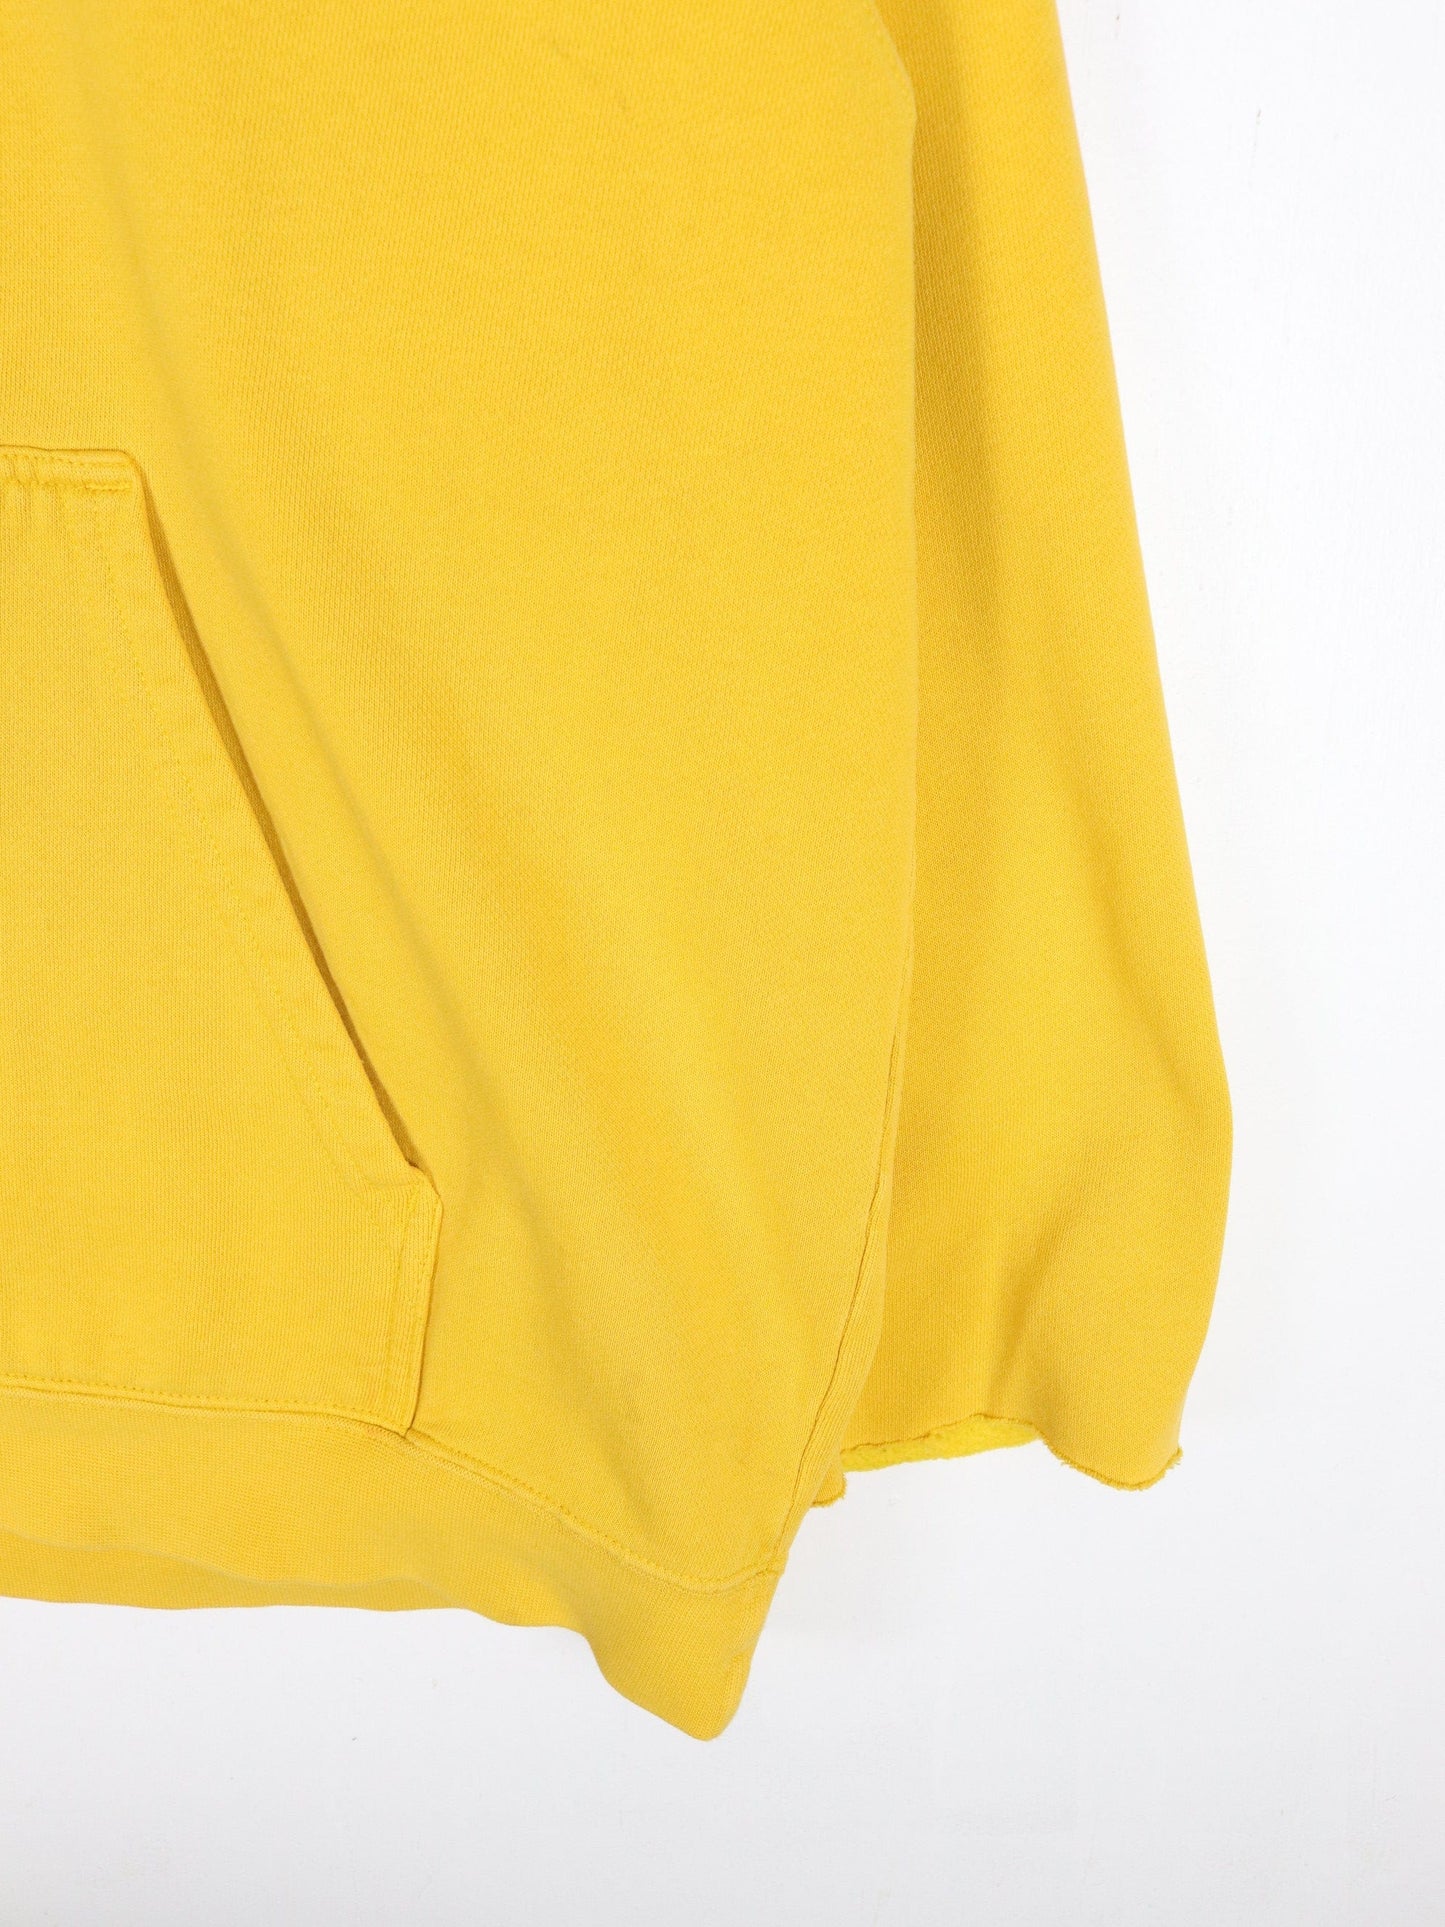 Nike Sweatshirts & Hoodies Vintage Nike Sweatshirt Mens XL Yellow Middle Swoosh Hoodie